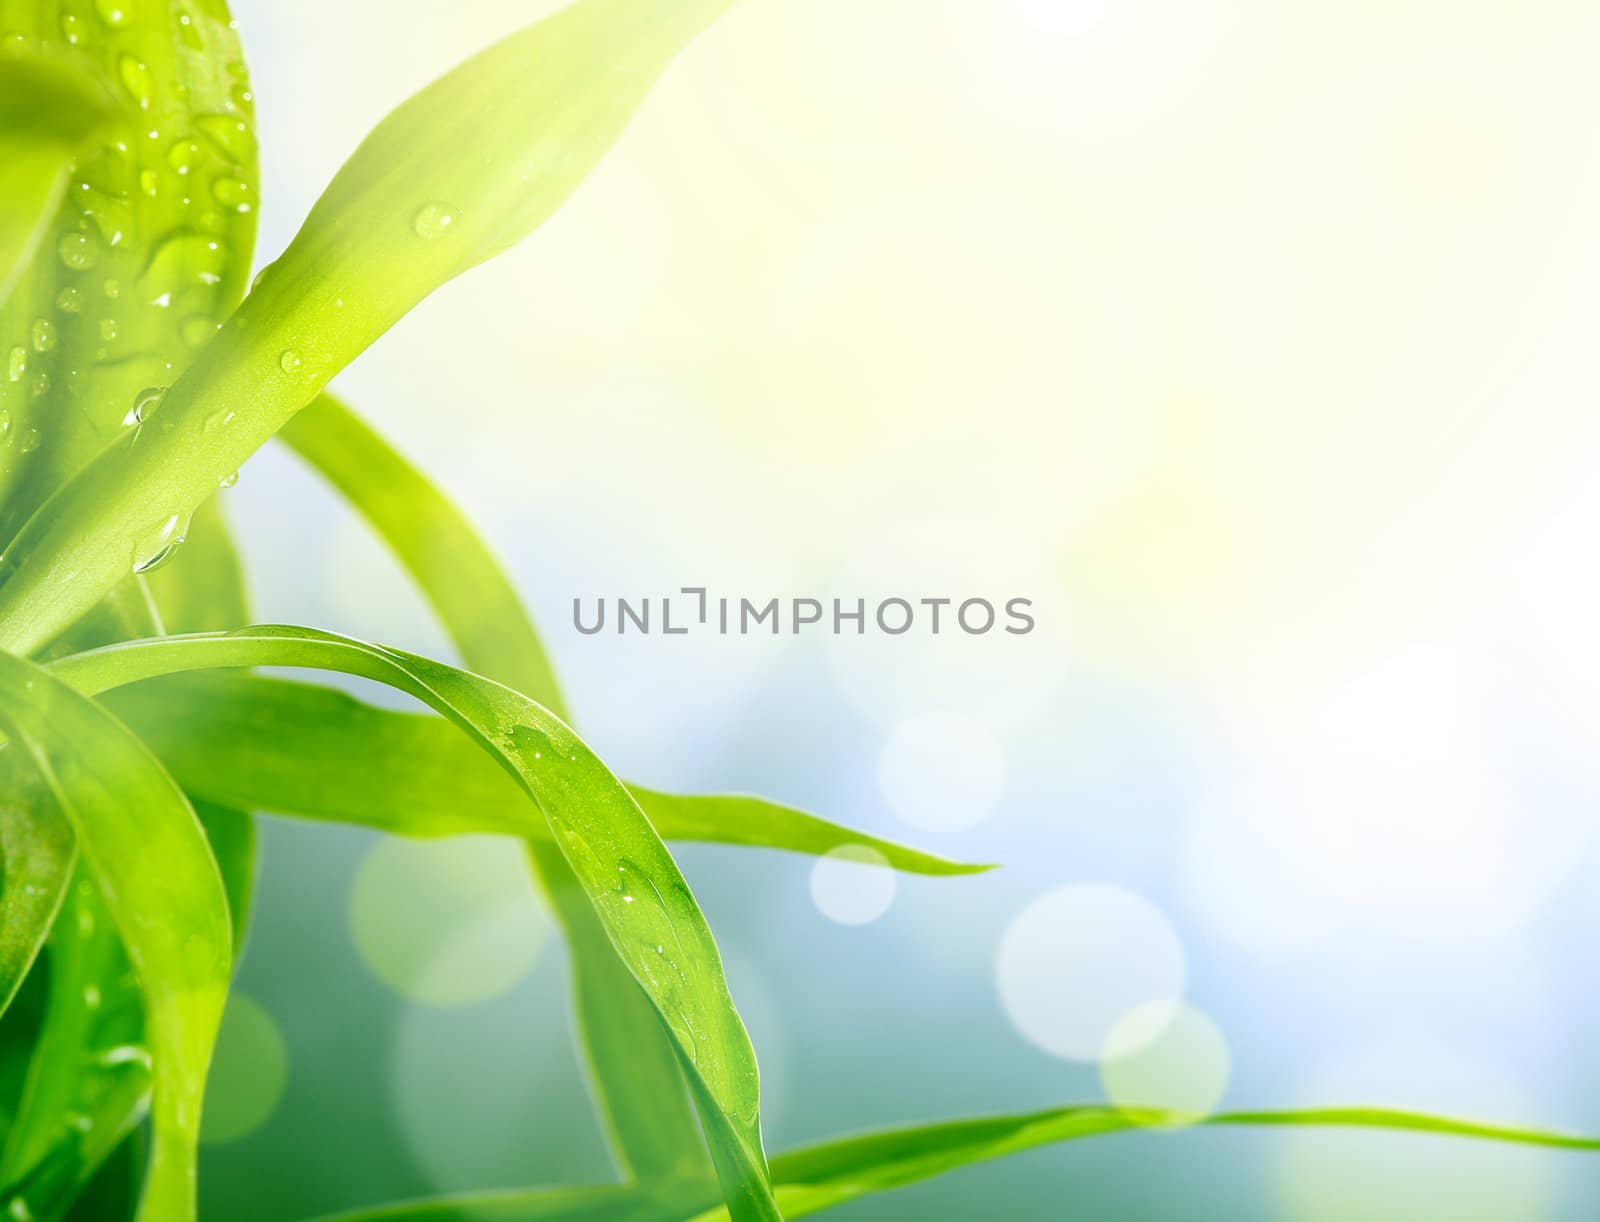 soft blur green grass background by rudchenko